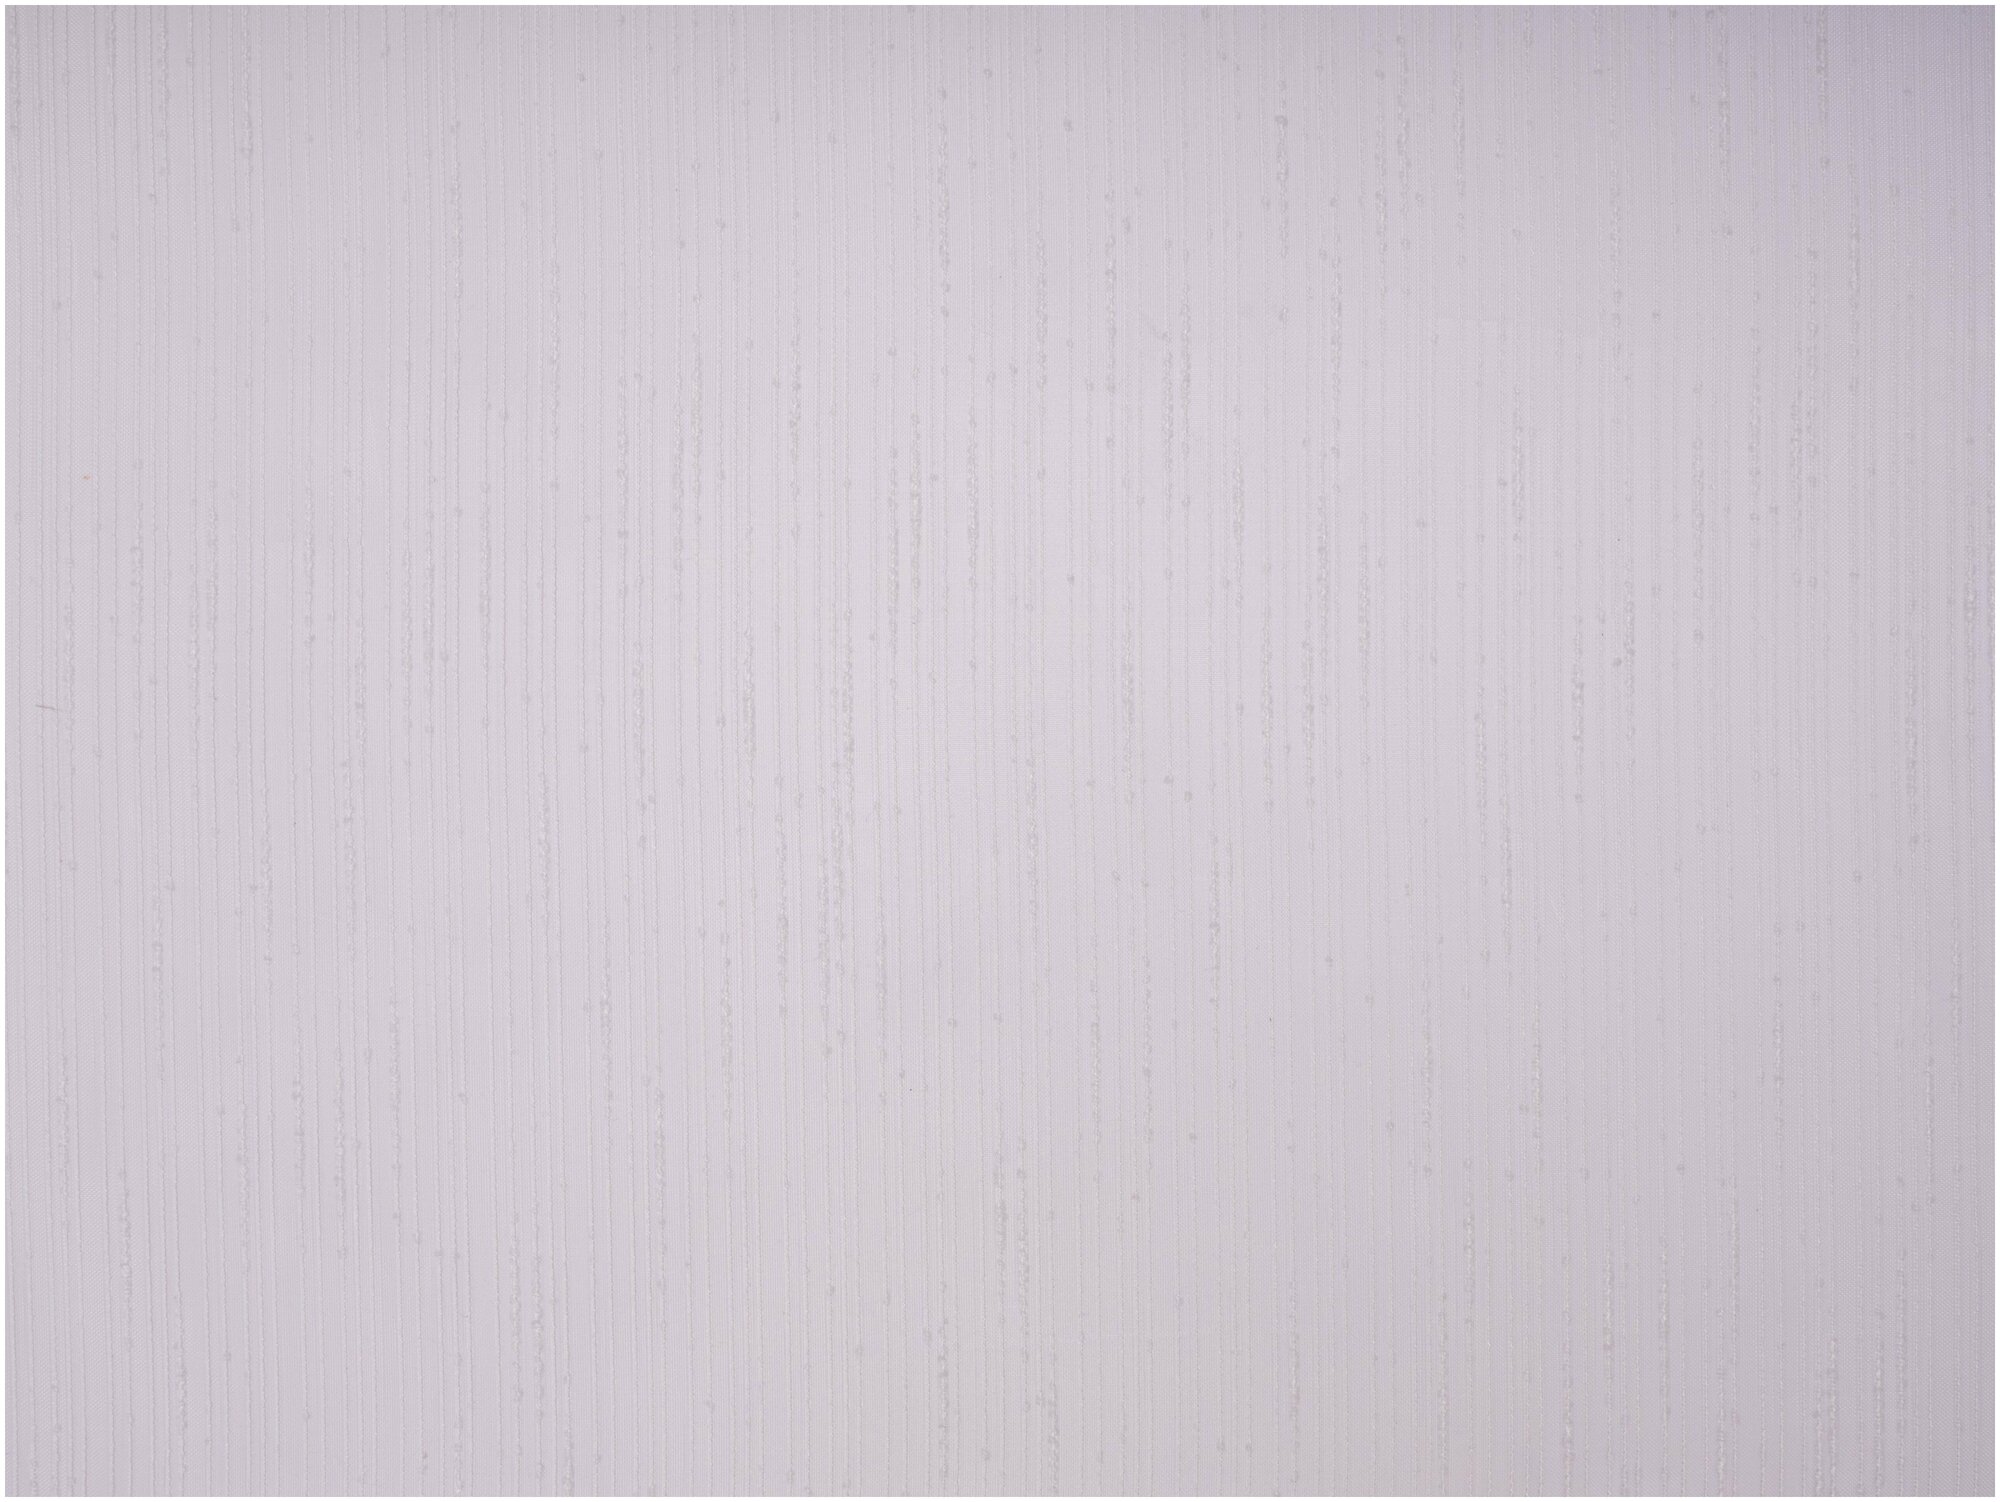 Тюль для комнаты Дождик цвет сиреневый, высота 260 см, ширина 400 см, на шторной ленте